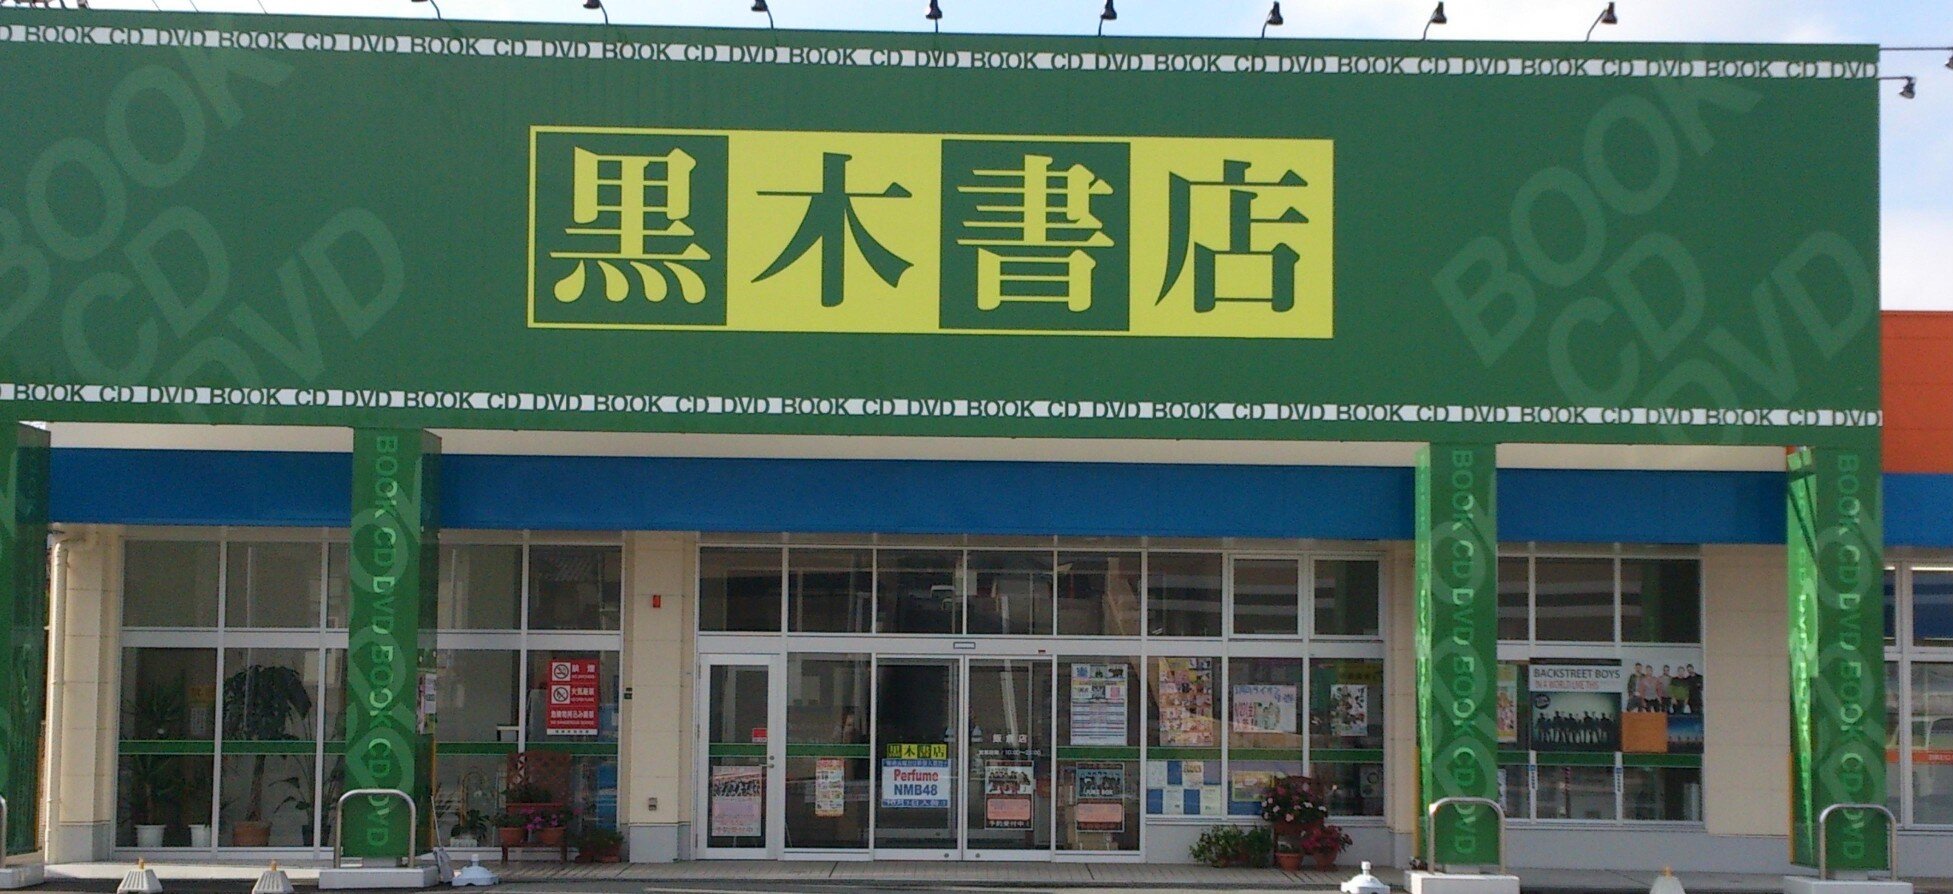 2012年12月15日OPEN
黒木書店の新店舗です。
本、CD・DVD、文具や雑貨も扱っています。